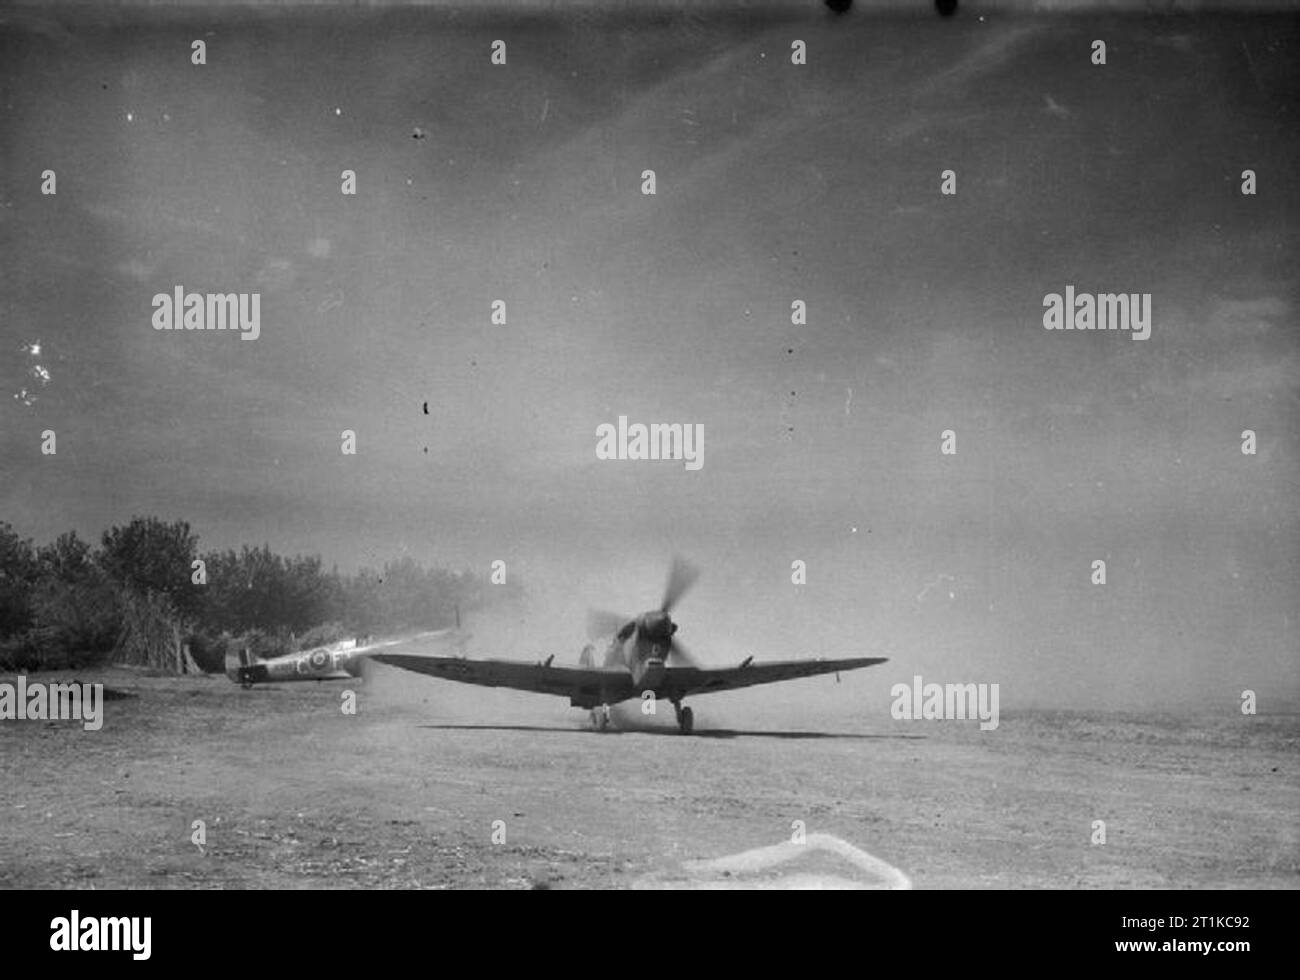 Royal Air Force - Italien, auf dem Balkan und in Südosteuropa, 1942-1945. Supermarine Spitfire Mark VCs von Nr. 43 Squadron RAF Taxi durch Wolken von Staub auf den an tusciano Landeplatz in der Nähe von Salerno, Italien. Stockfoto